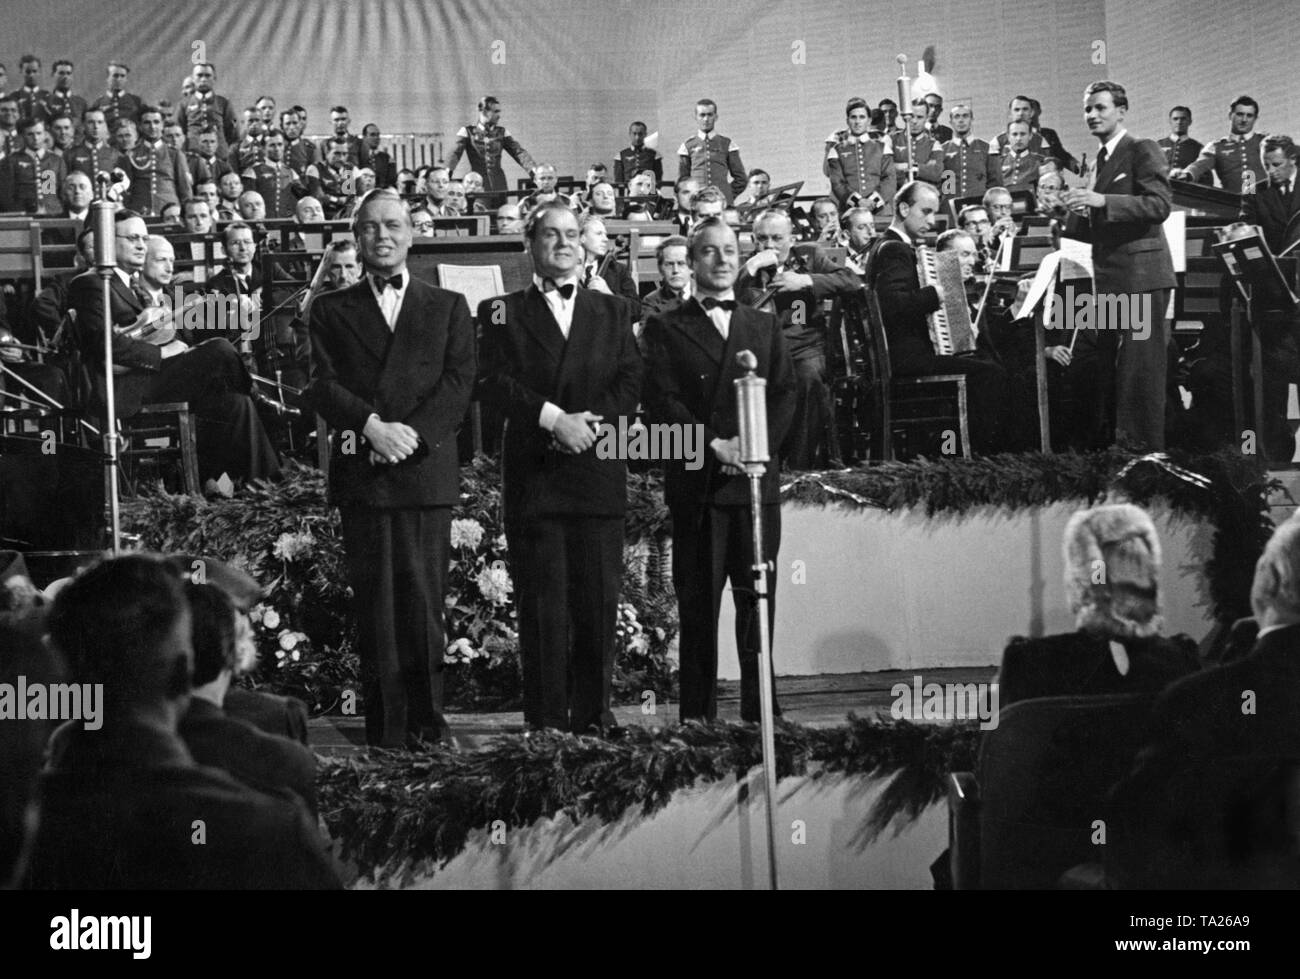 Die drei Solisten in der vorderen Reihe sind (von links): Hans Brausewetter, Josef Sieber und Heinz Ruehmann. Dies ist eine Szene aus dem Propagandafilm "Wunschkonzert" von Eduard Borsody, in der sie singt das Lied 'Das kann doch einen Seemann nicht Erschuettern" geleitet. Stockfoto